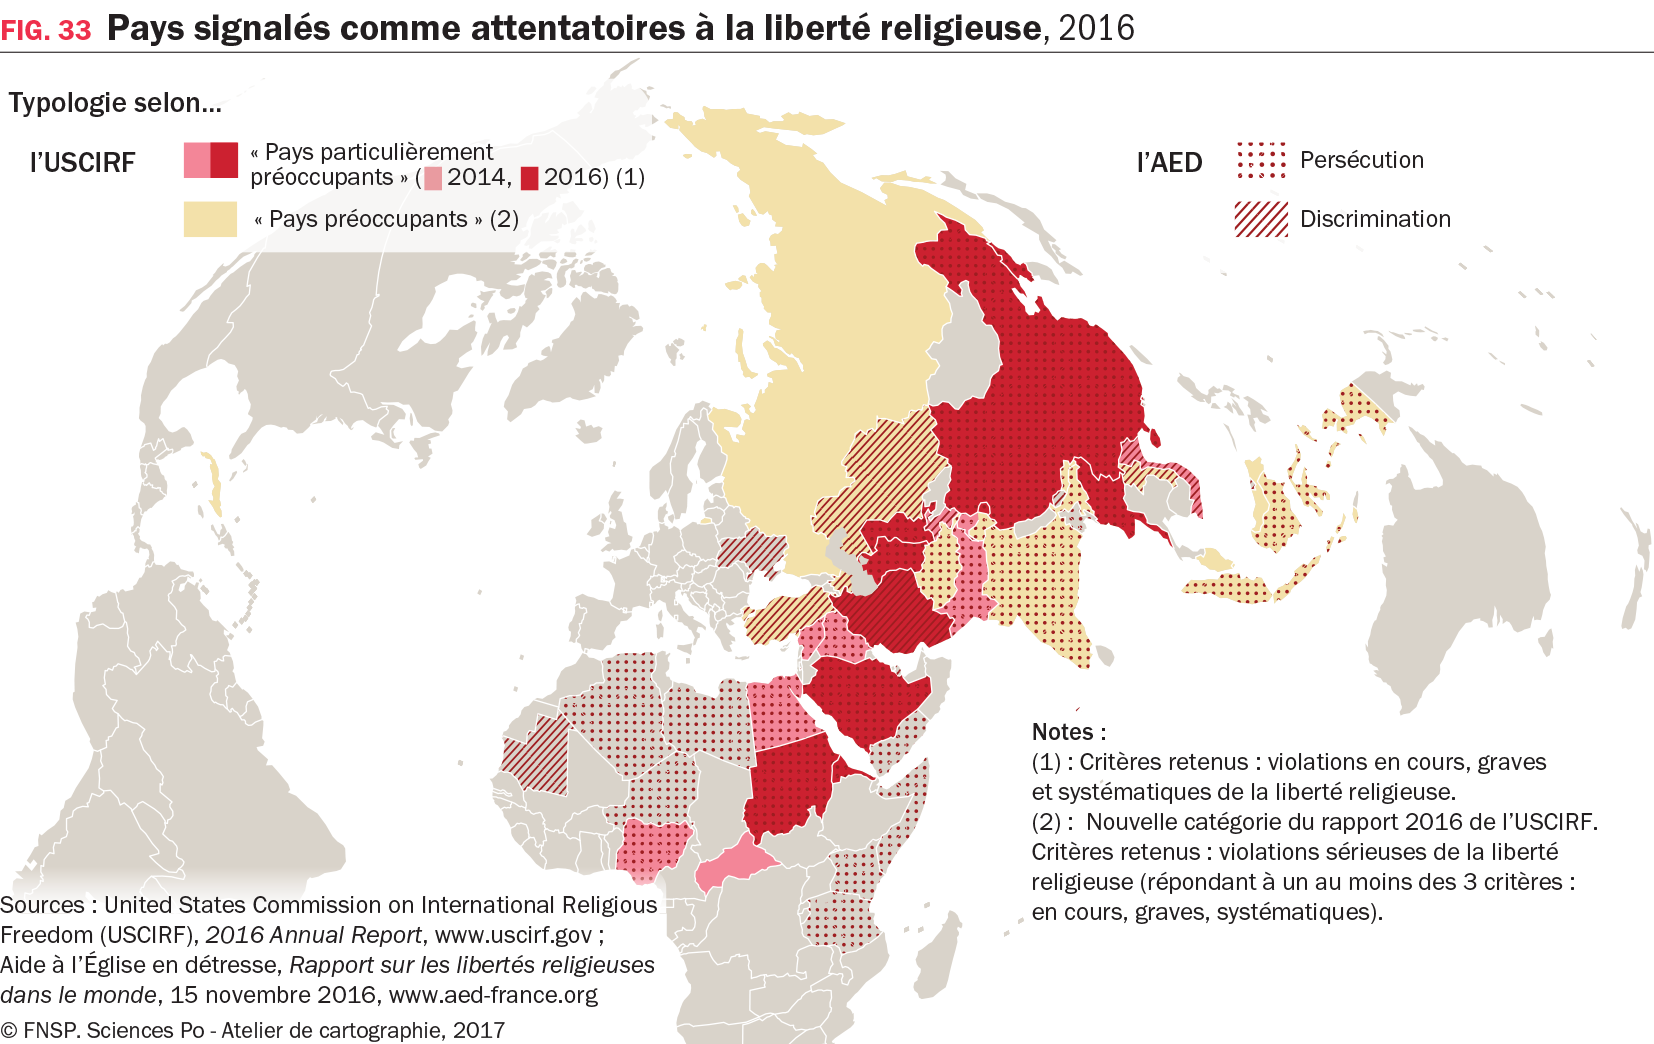 Carte : Pays signalés comme attentatoires à la liberté religieuse, 2016